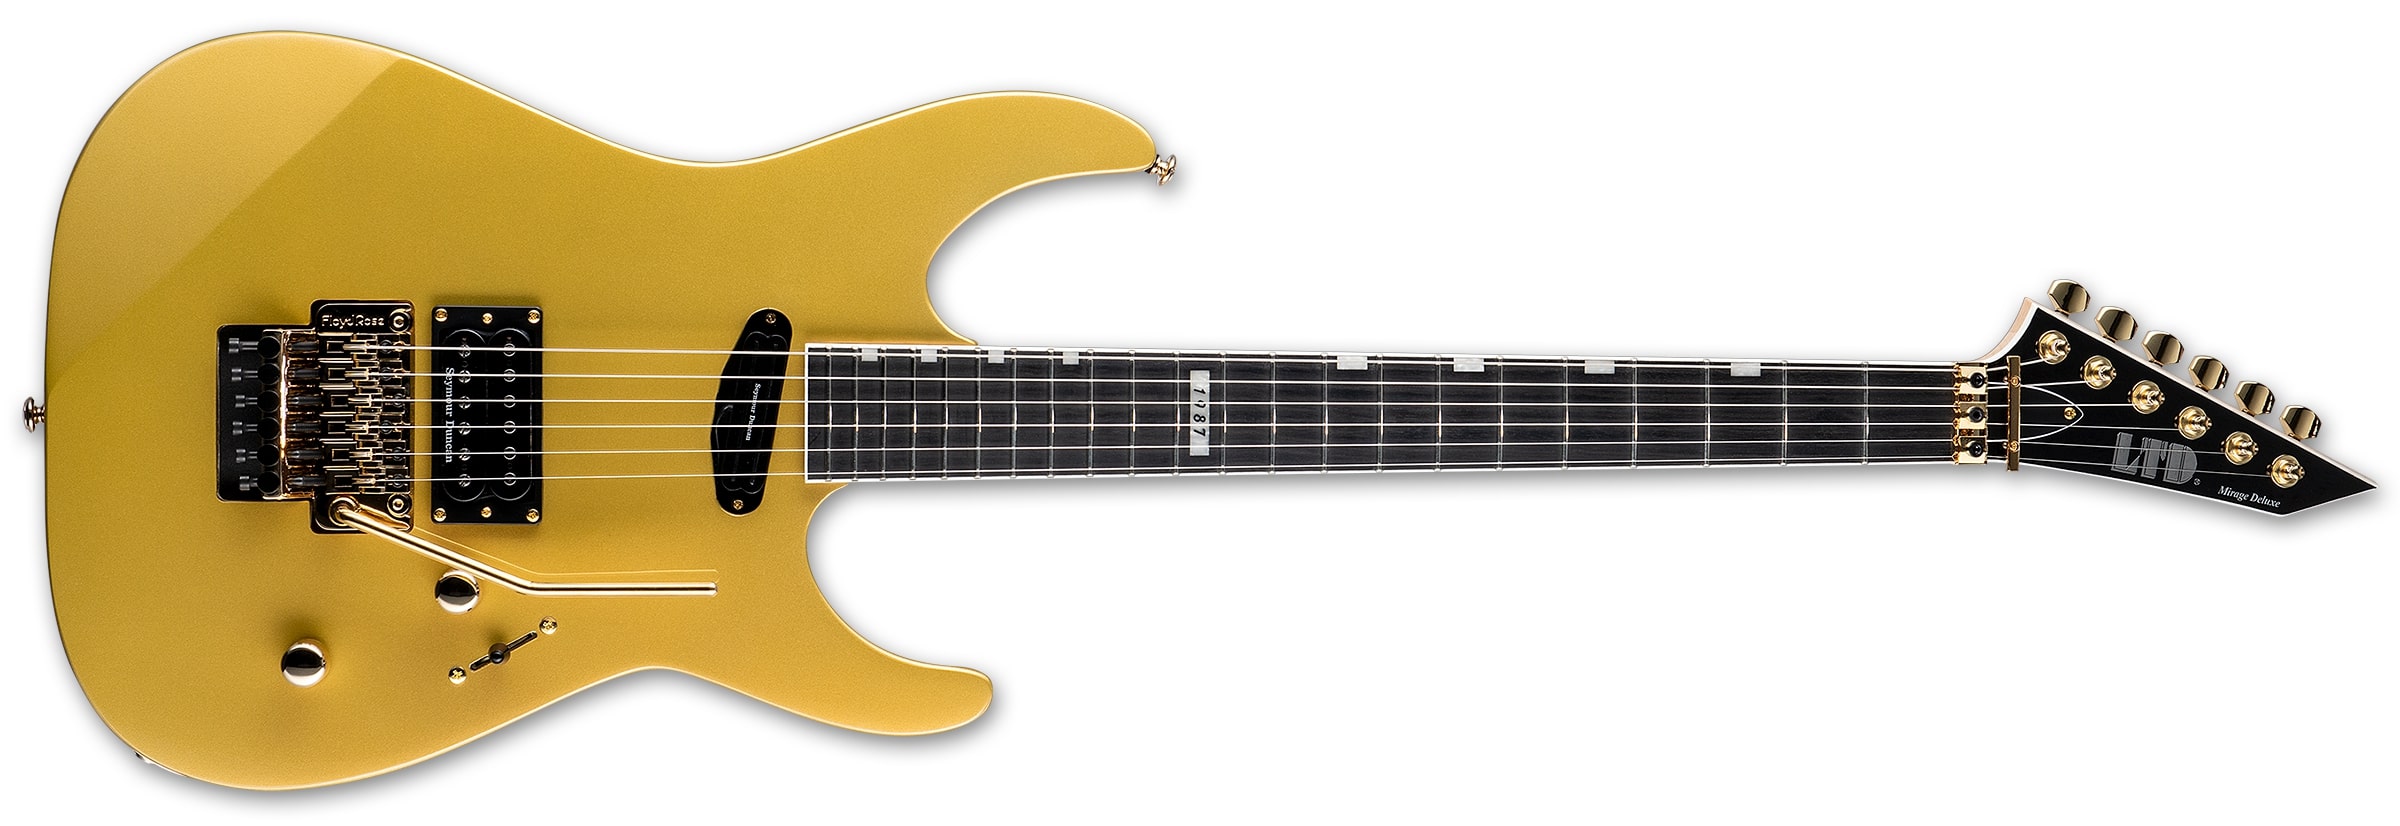 ESP LTD Mirage Deluxe 87 Electric Guitar, Metallic Gold LMIRAGEDX87MGO